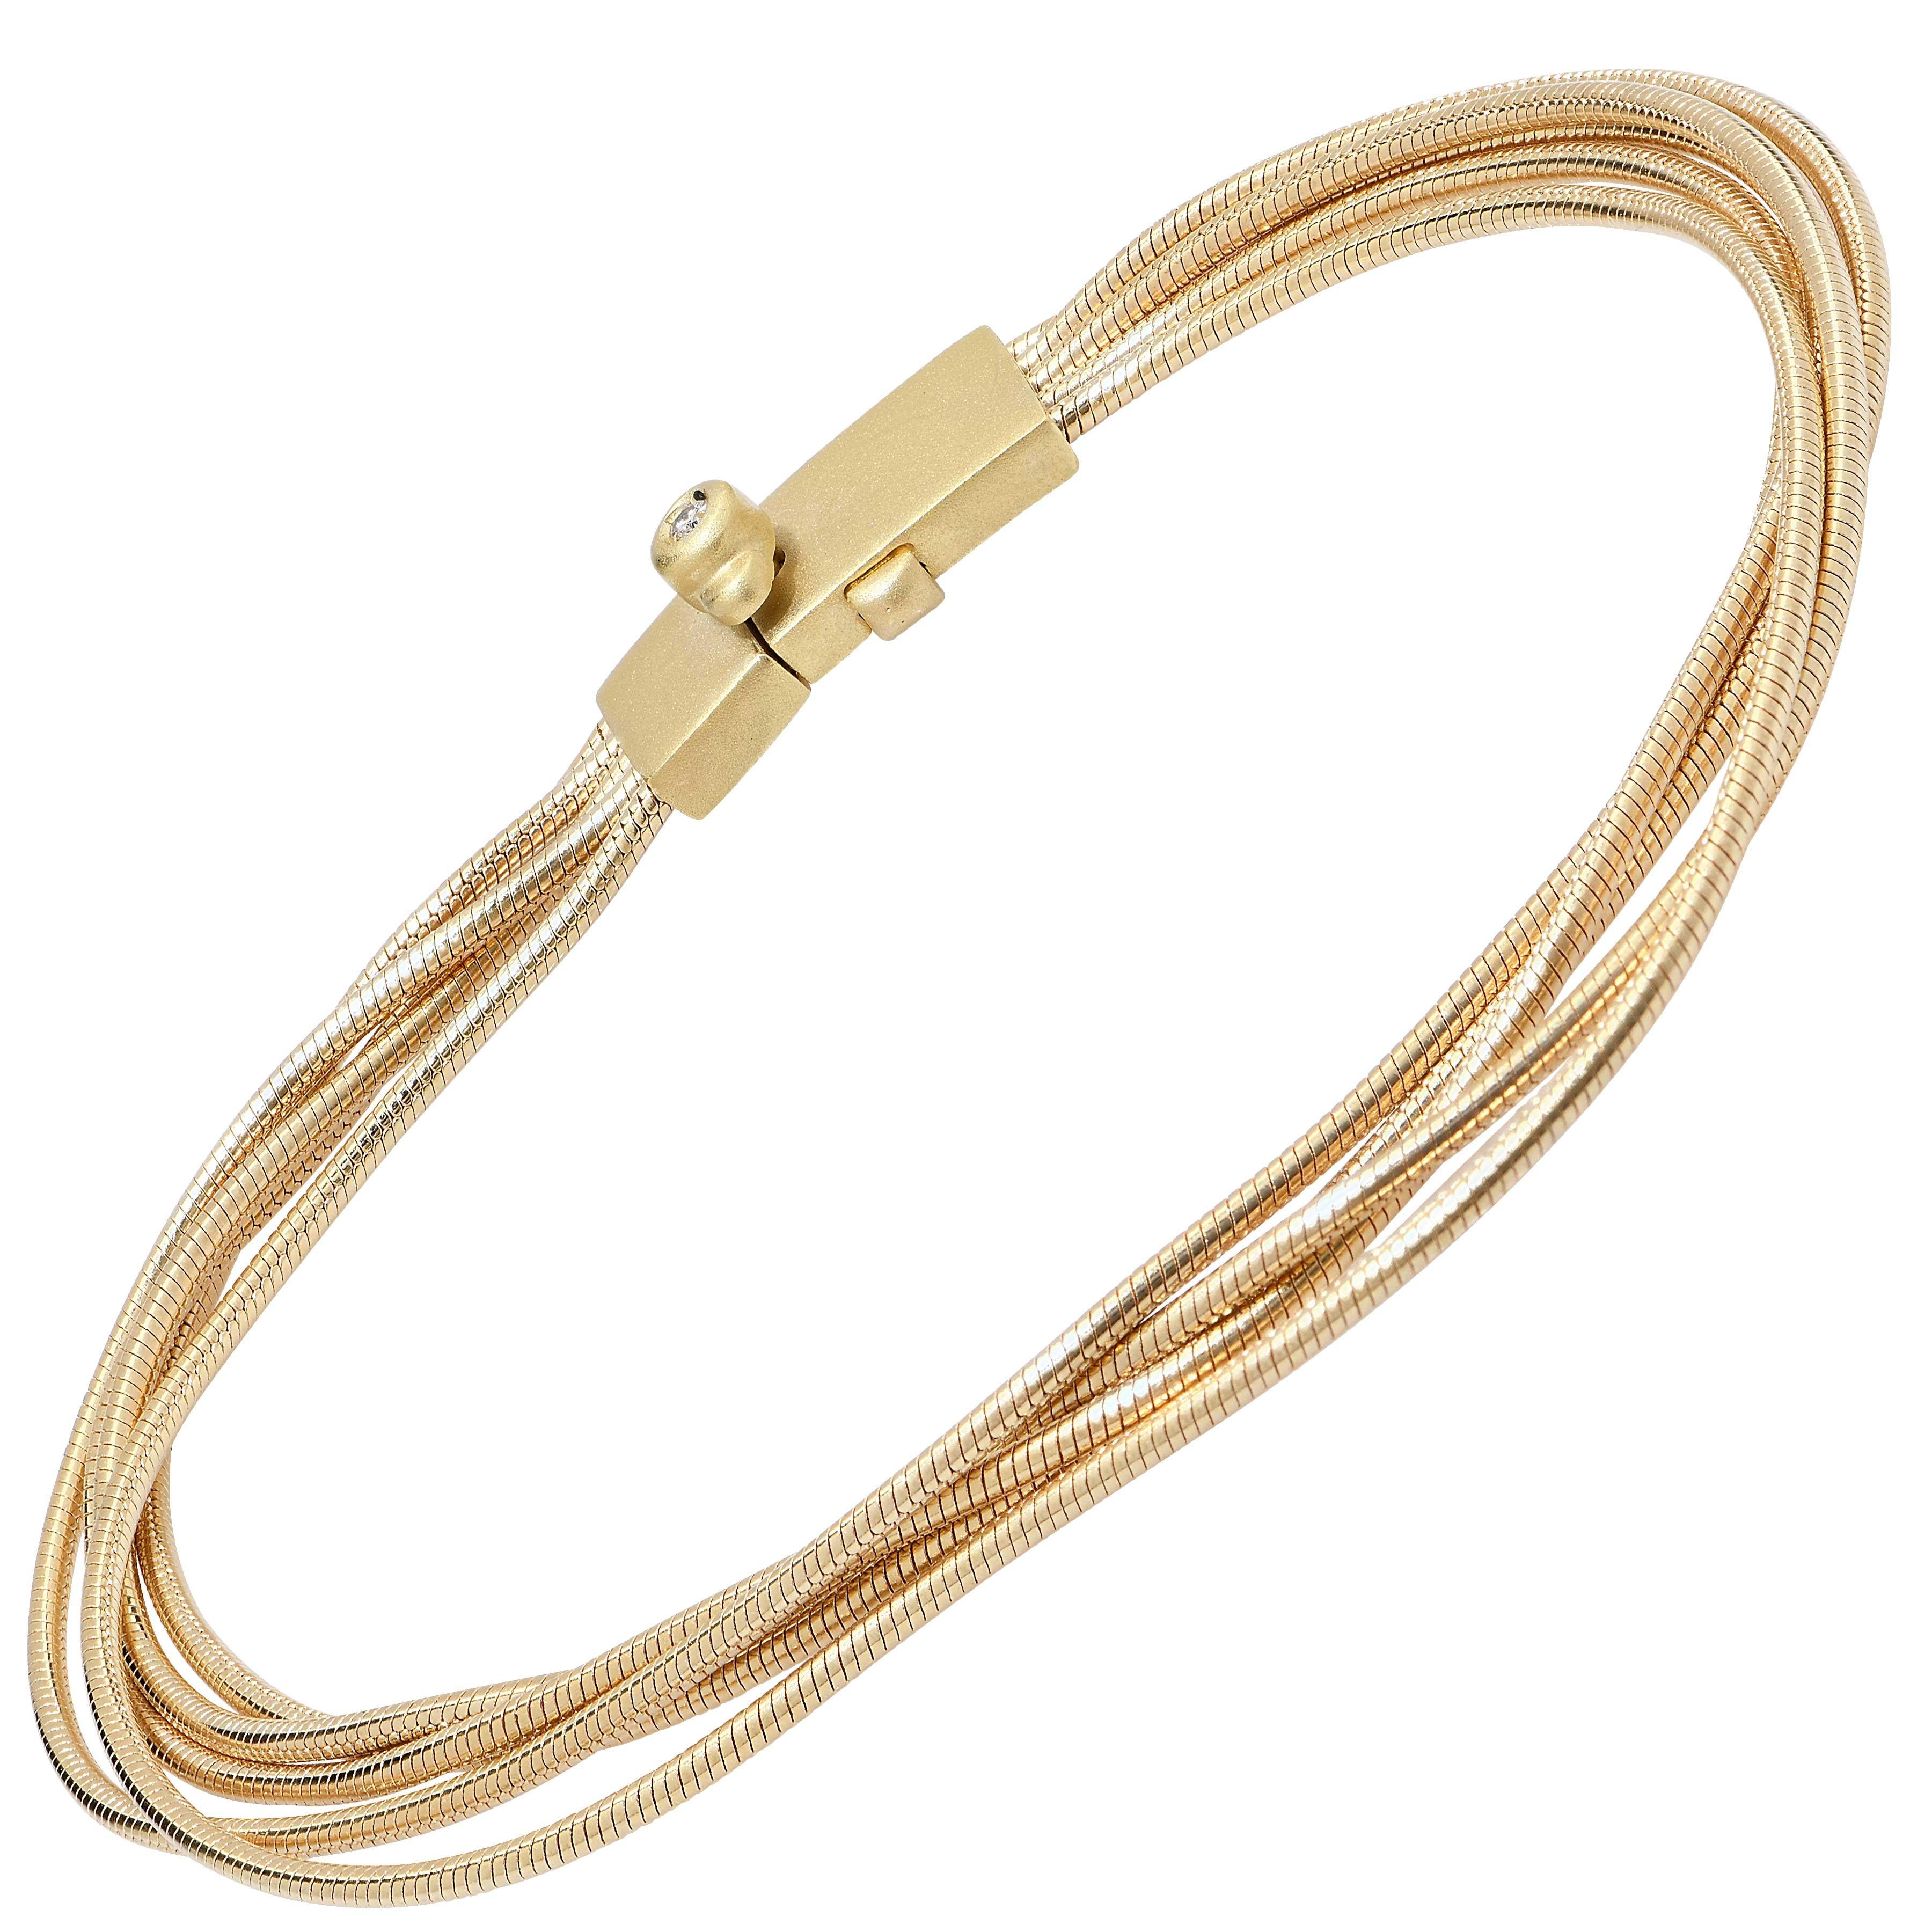 H. Stern 18 Karat Yellow Gold Four Strand Bracelet.
Bracelet Length: 7 Inches
Metal Type: 18 Karat Yellow Gold
Metal Weight: 16.9 Grams